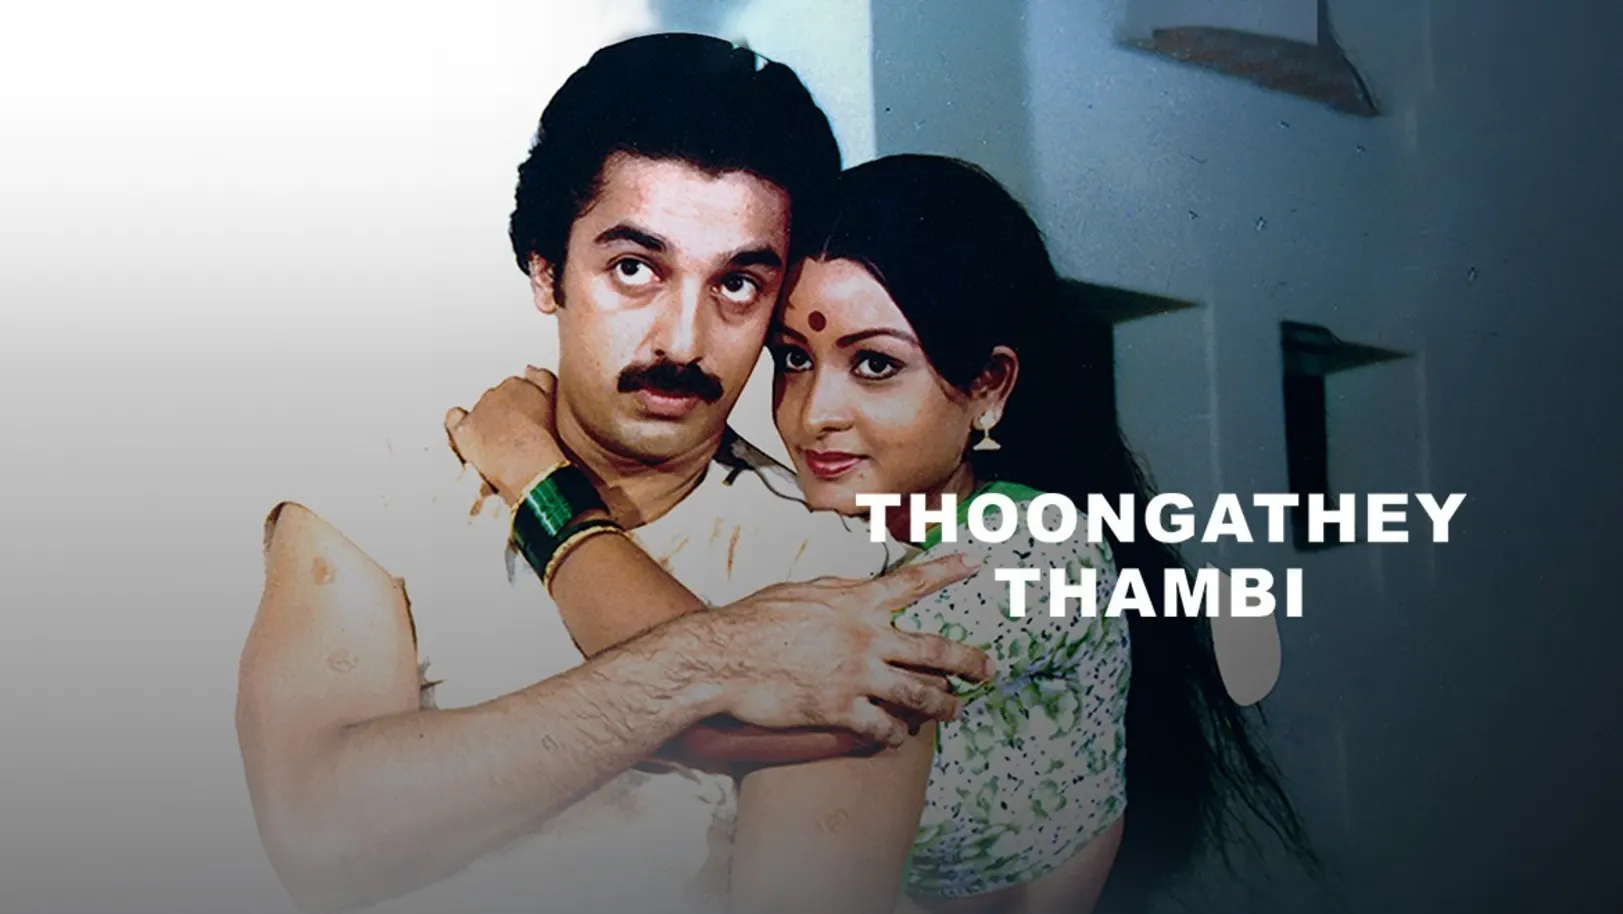 Thoongathey Thambi Thoongathey Movie